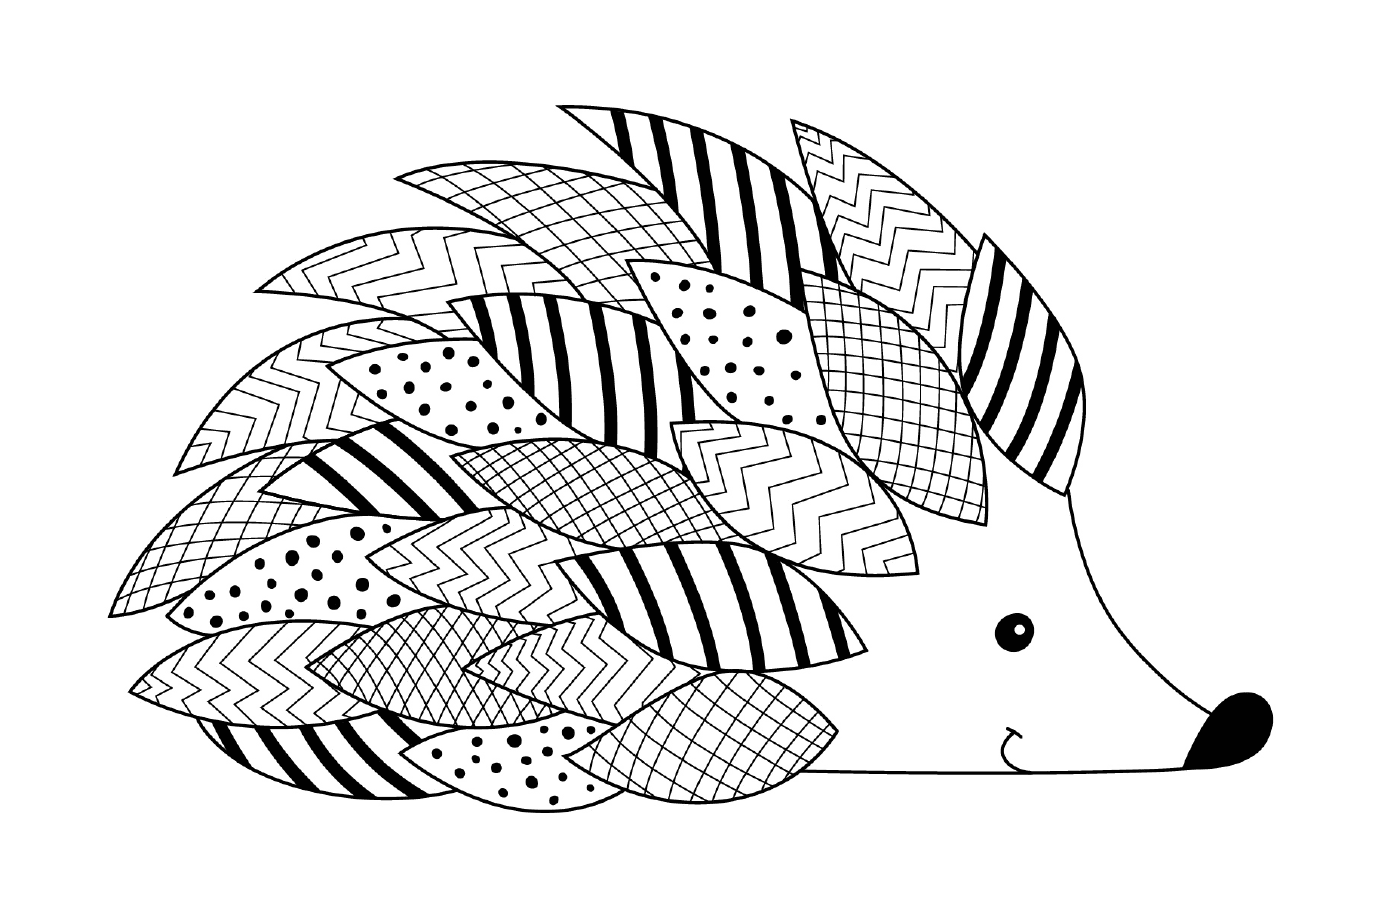  Hedgehog com muitos padrões 